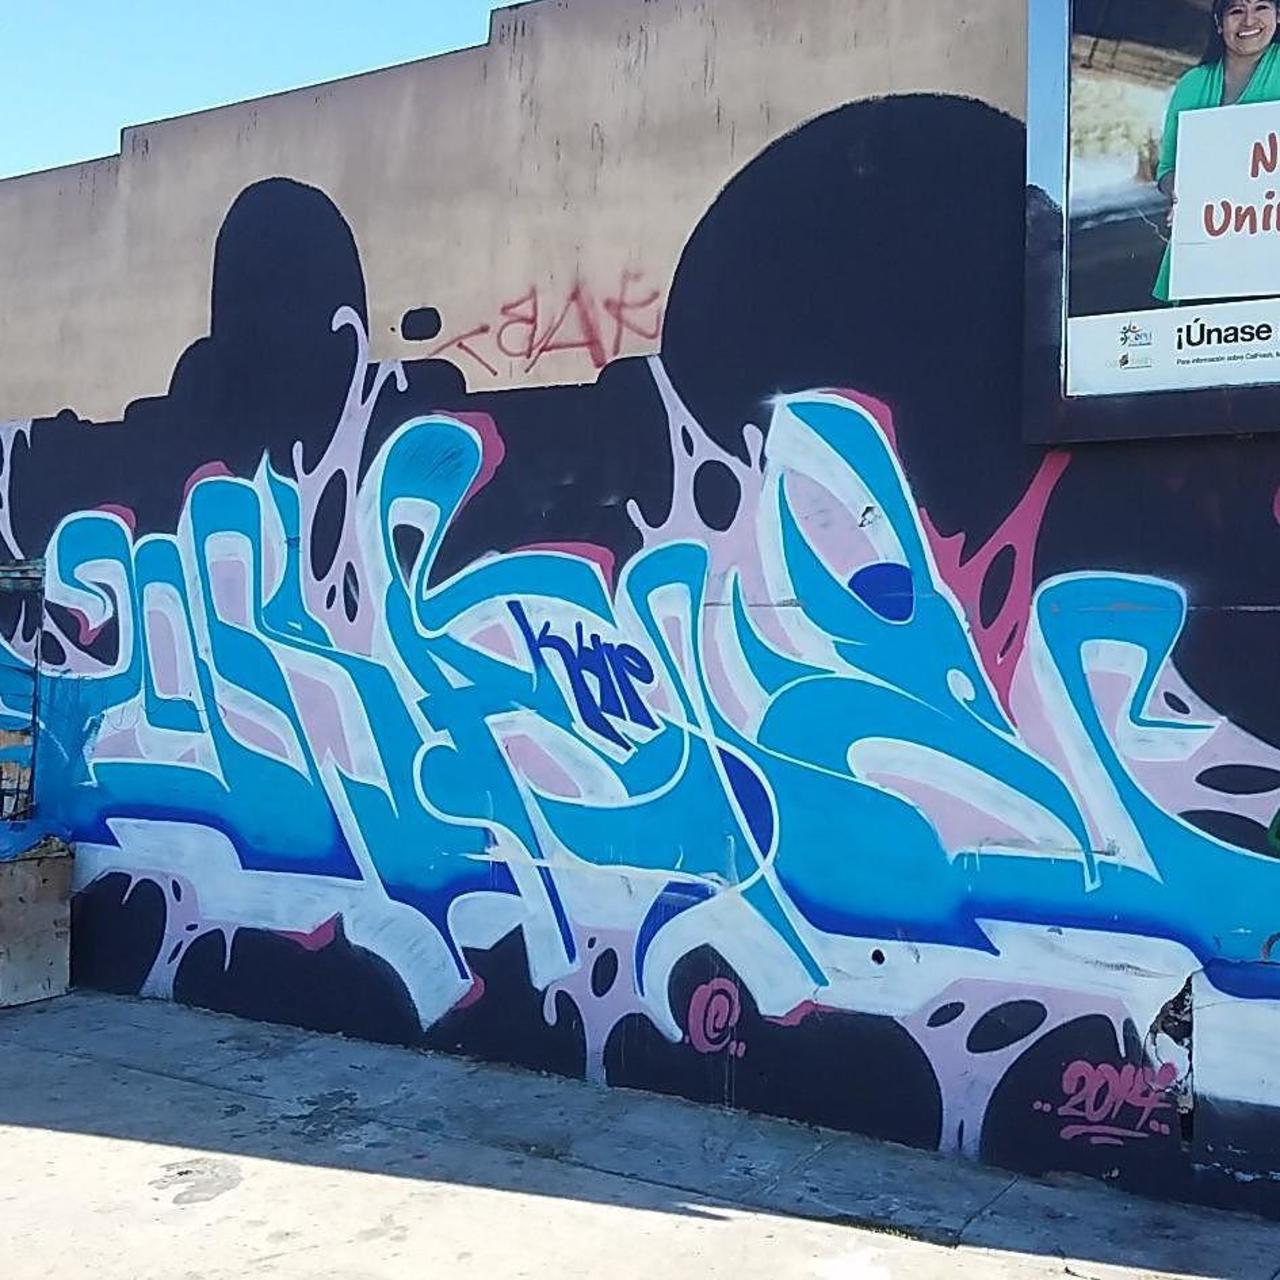 RT @artpushr: via #killing_kalifornia "http://ift.tt/1gXHDIi" #graffiti #streetart http://t.co/msBRQ7MTu0